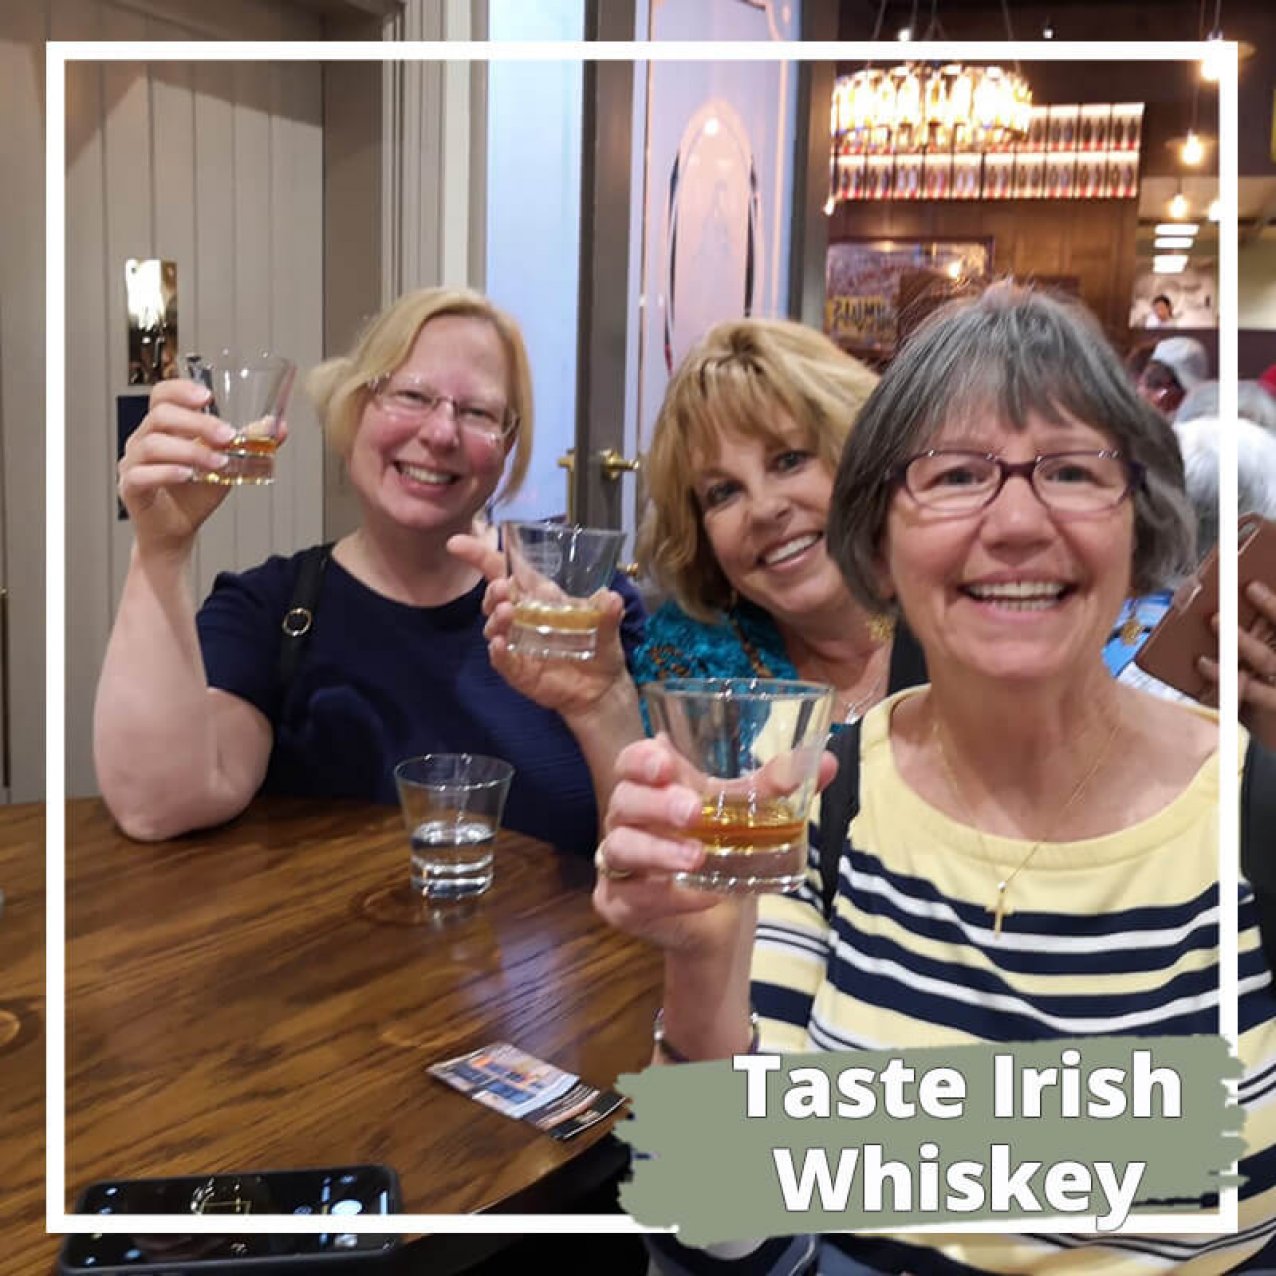 Taste Irish whiskey on a private tour of Ireland